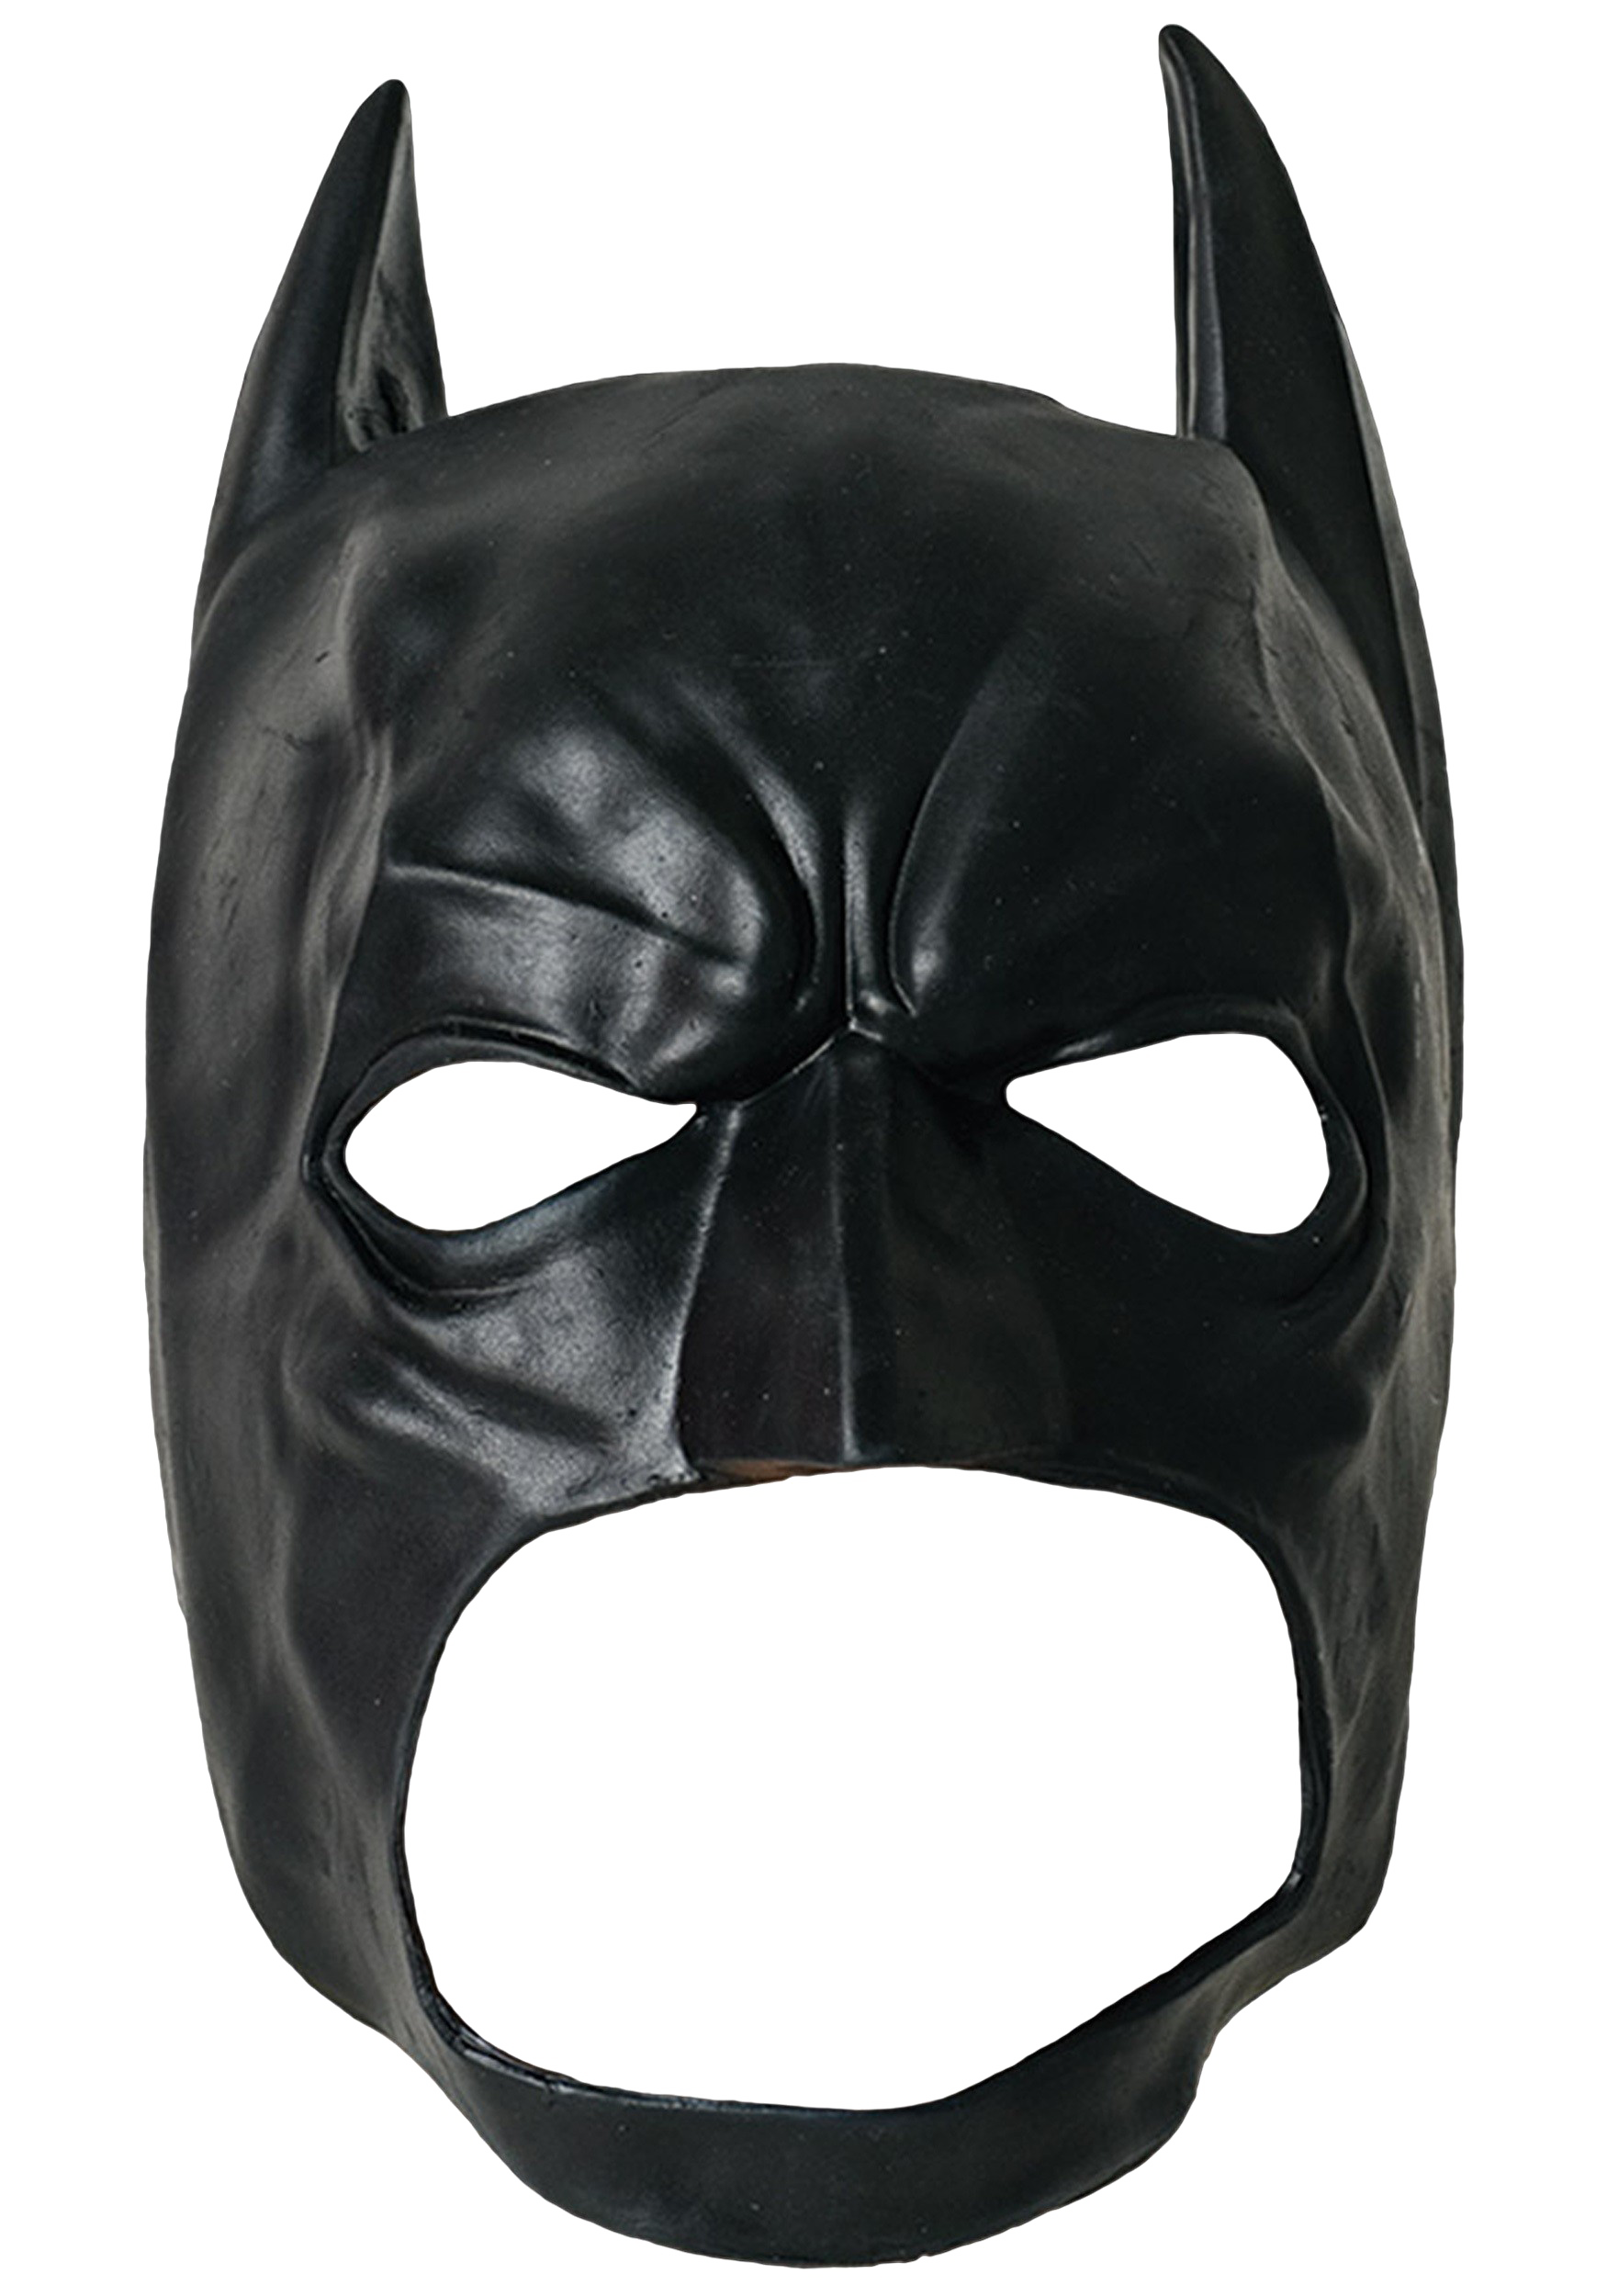 Immagine del PNG della maschera di Batman